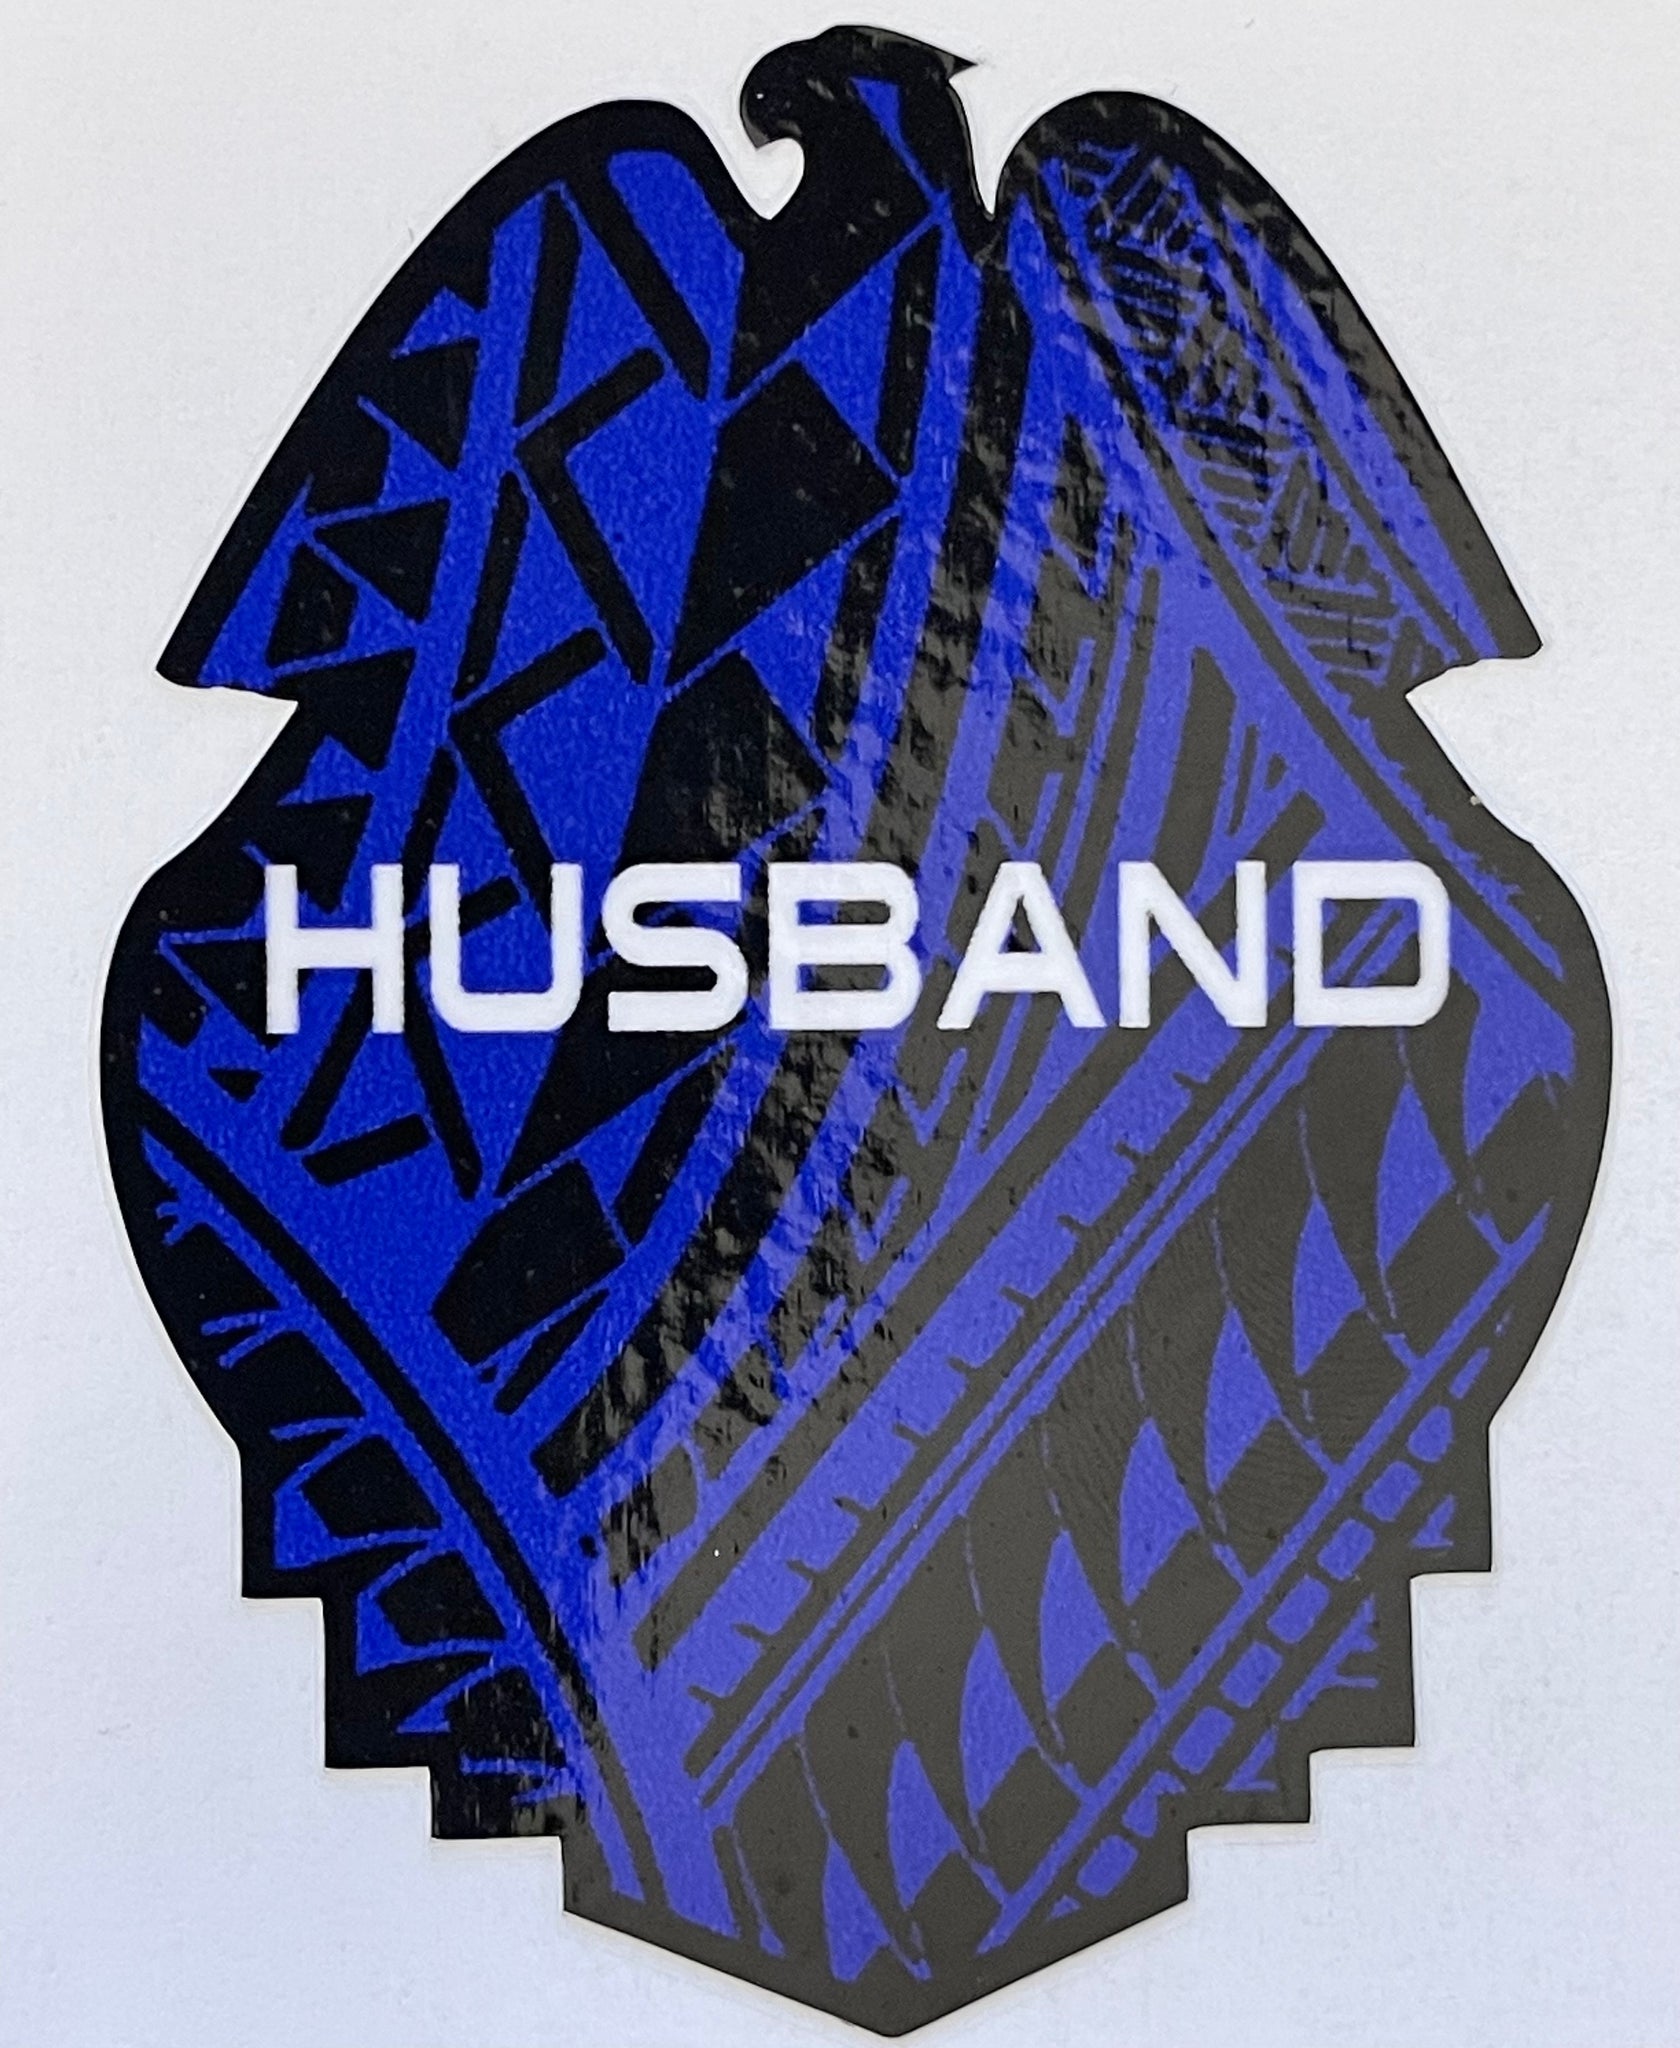 Husband Full Tribal Badge Sticker